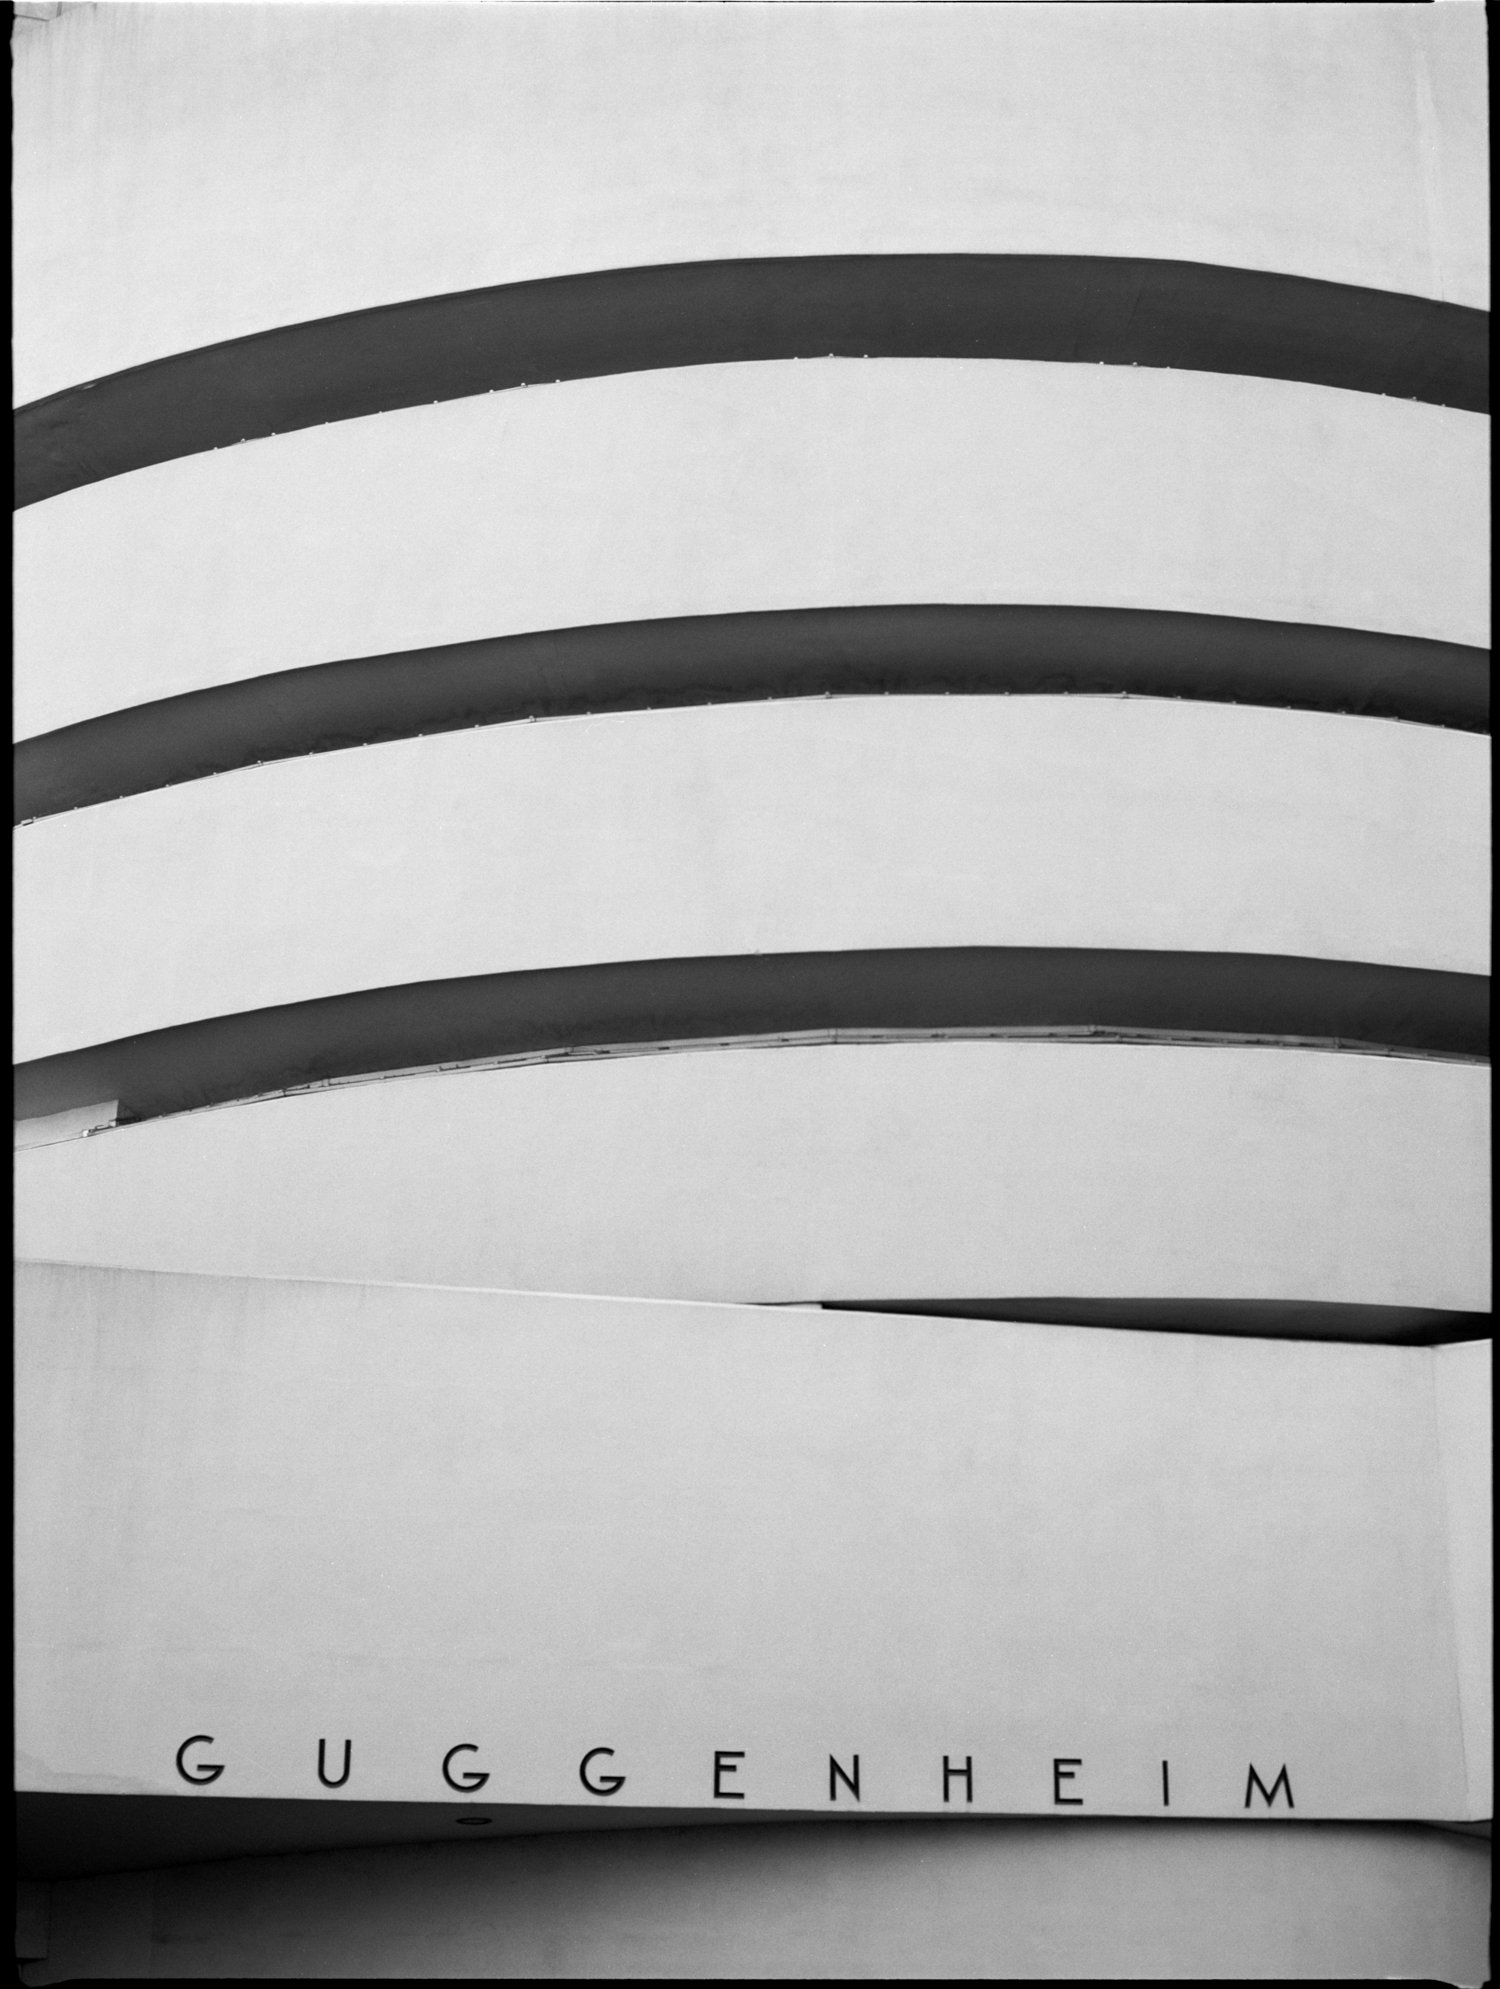 Guggenheim, New York, 2021